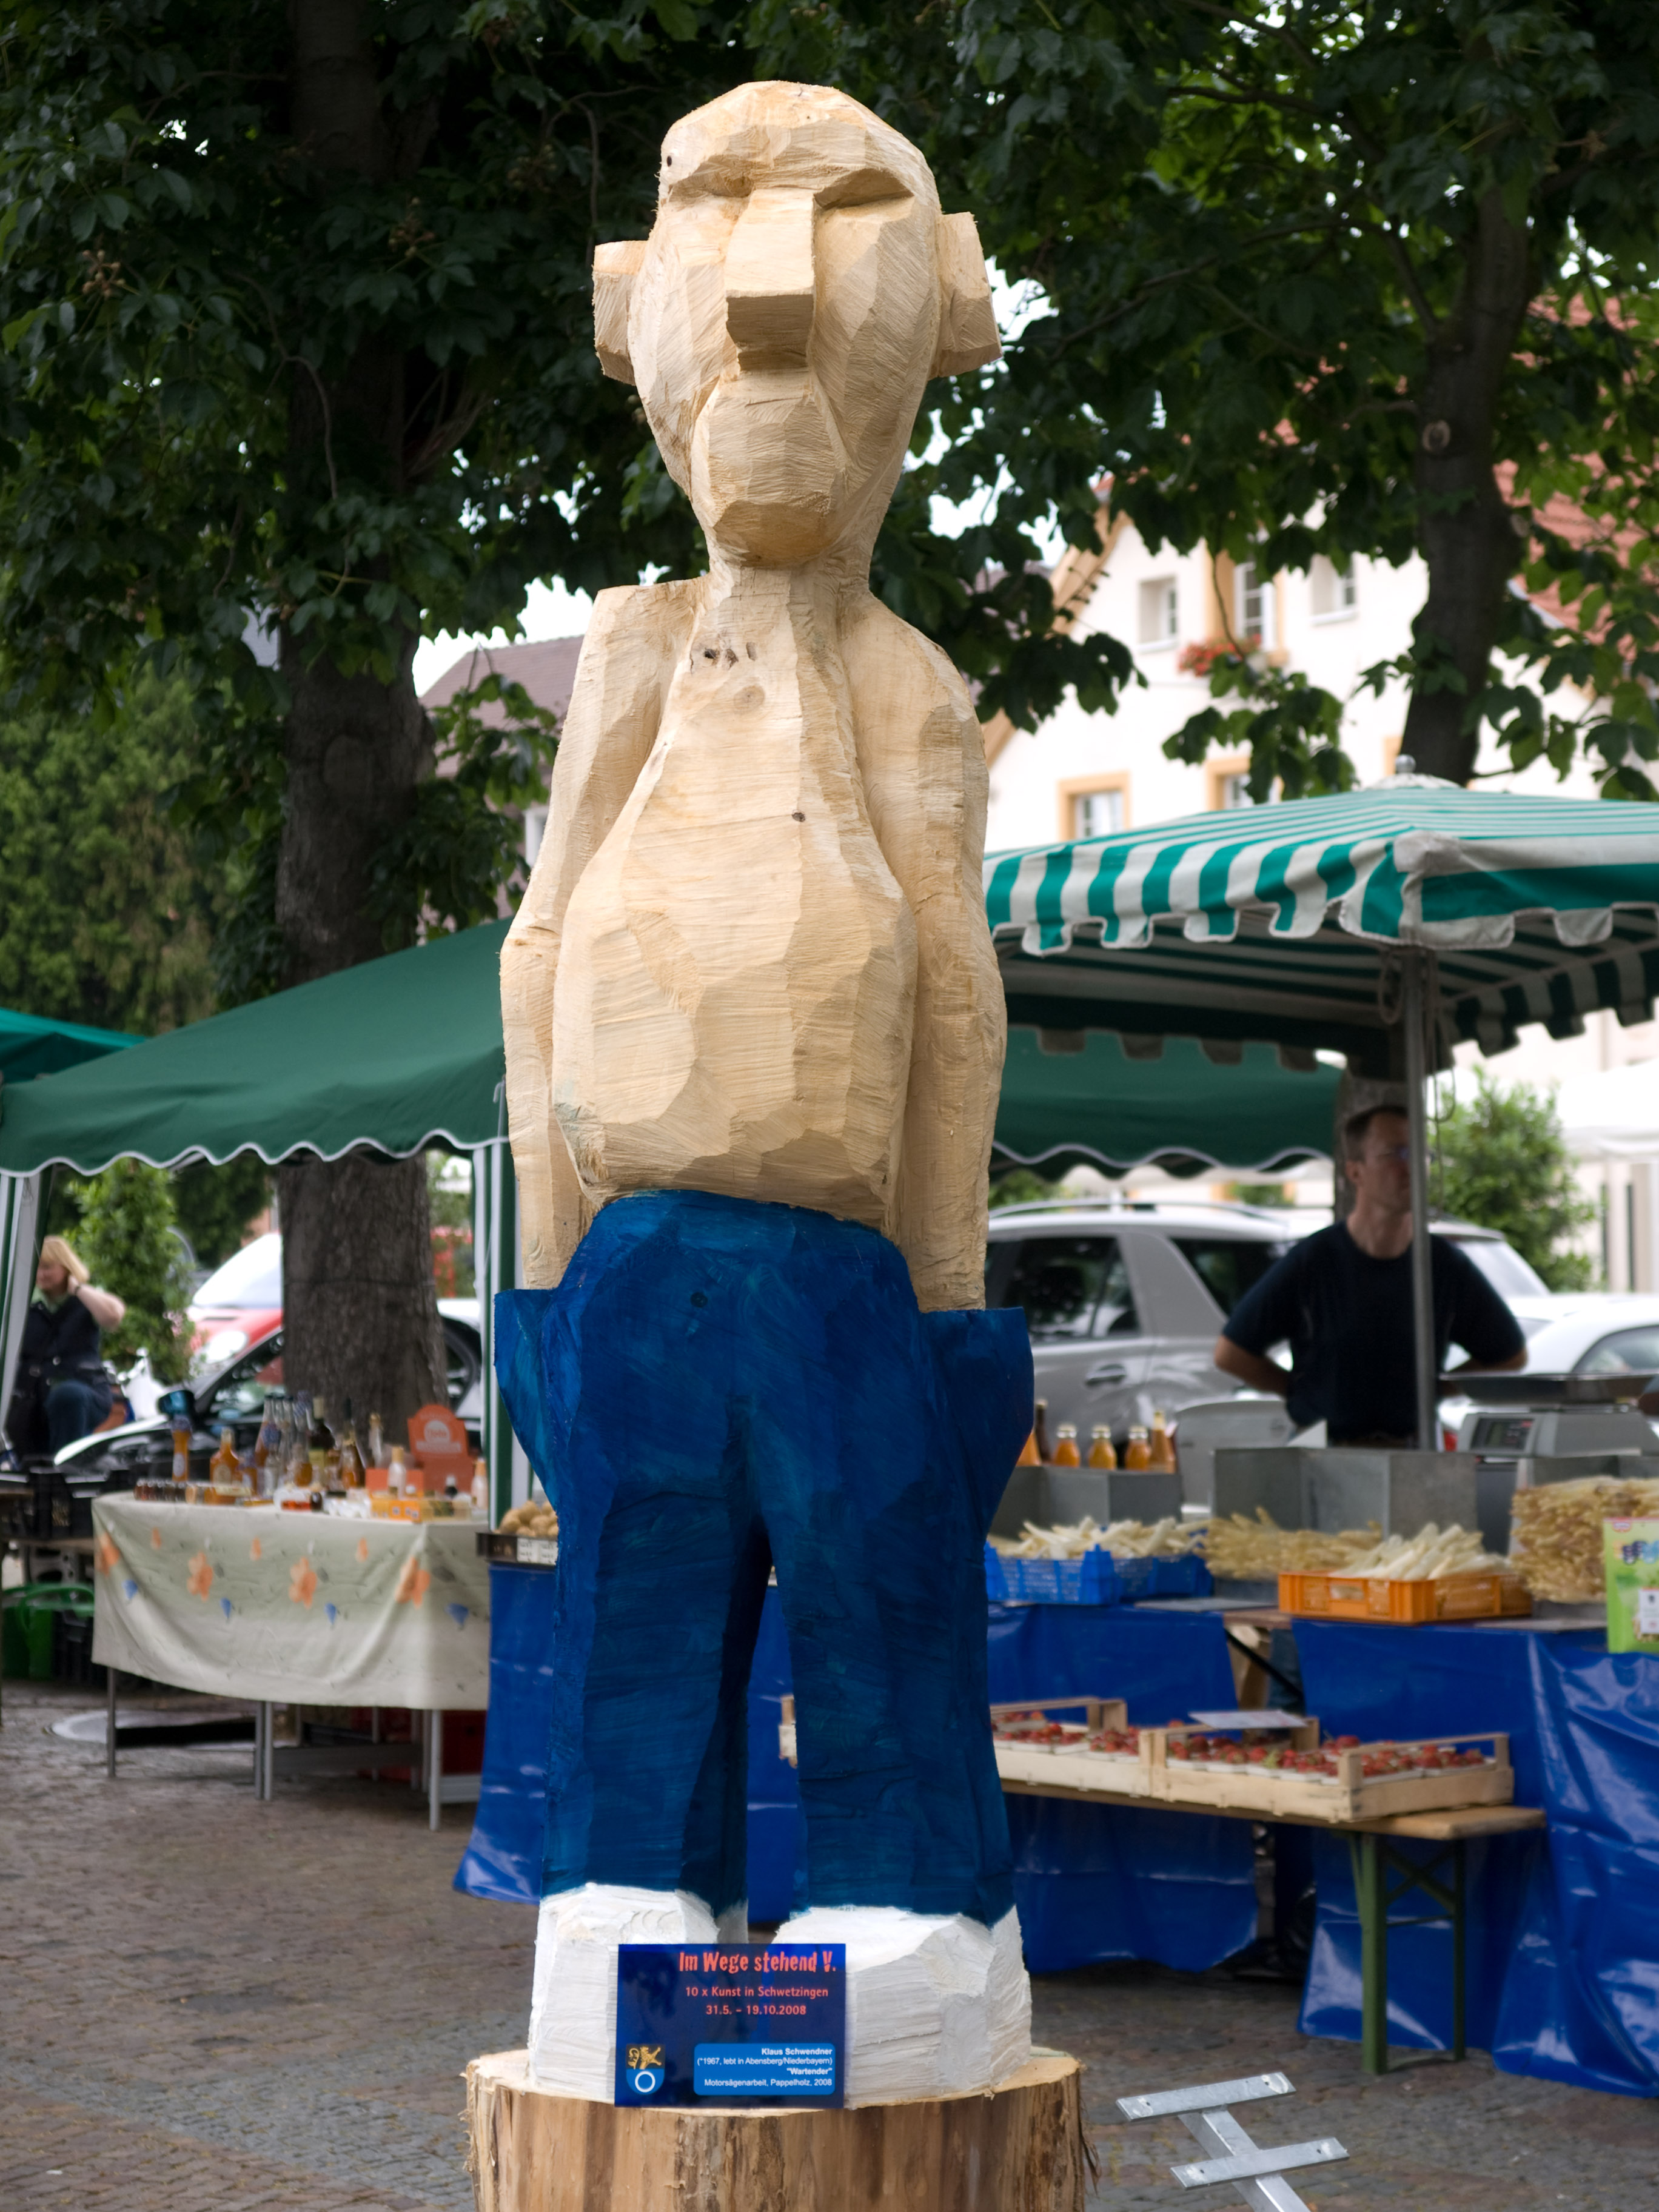 Skulptur "Wartender" bei einer Kunstausstellung in Schwetzingen 2008